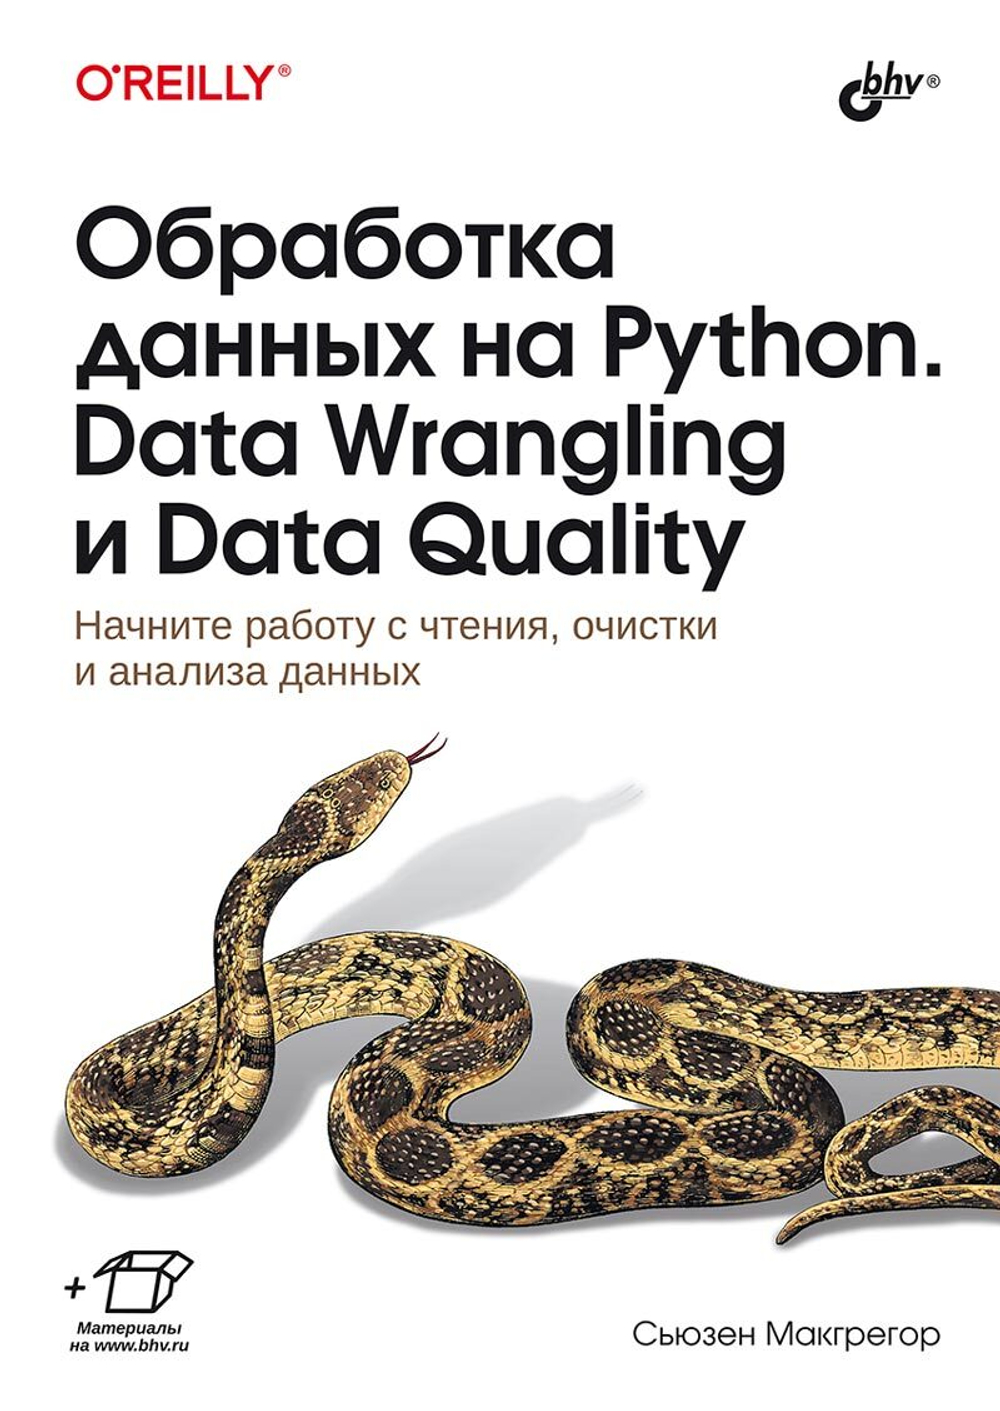 Книга: Макгрегор С.  "Обработка данных на Python. Data Wrangling и Data Quality"